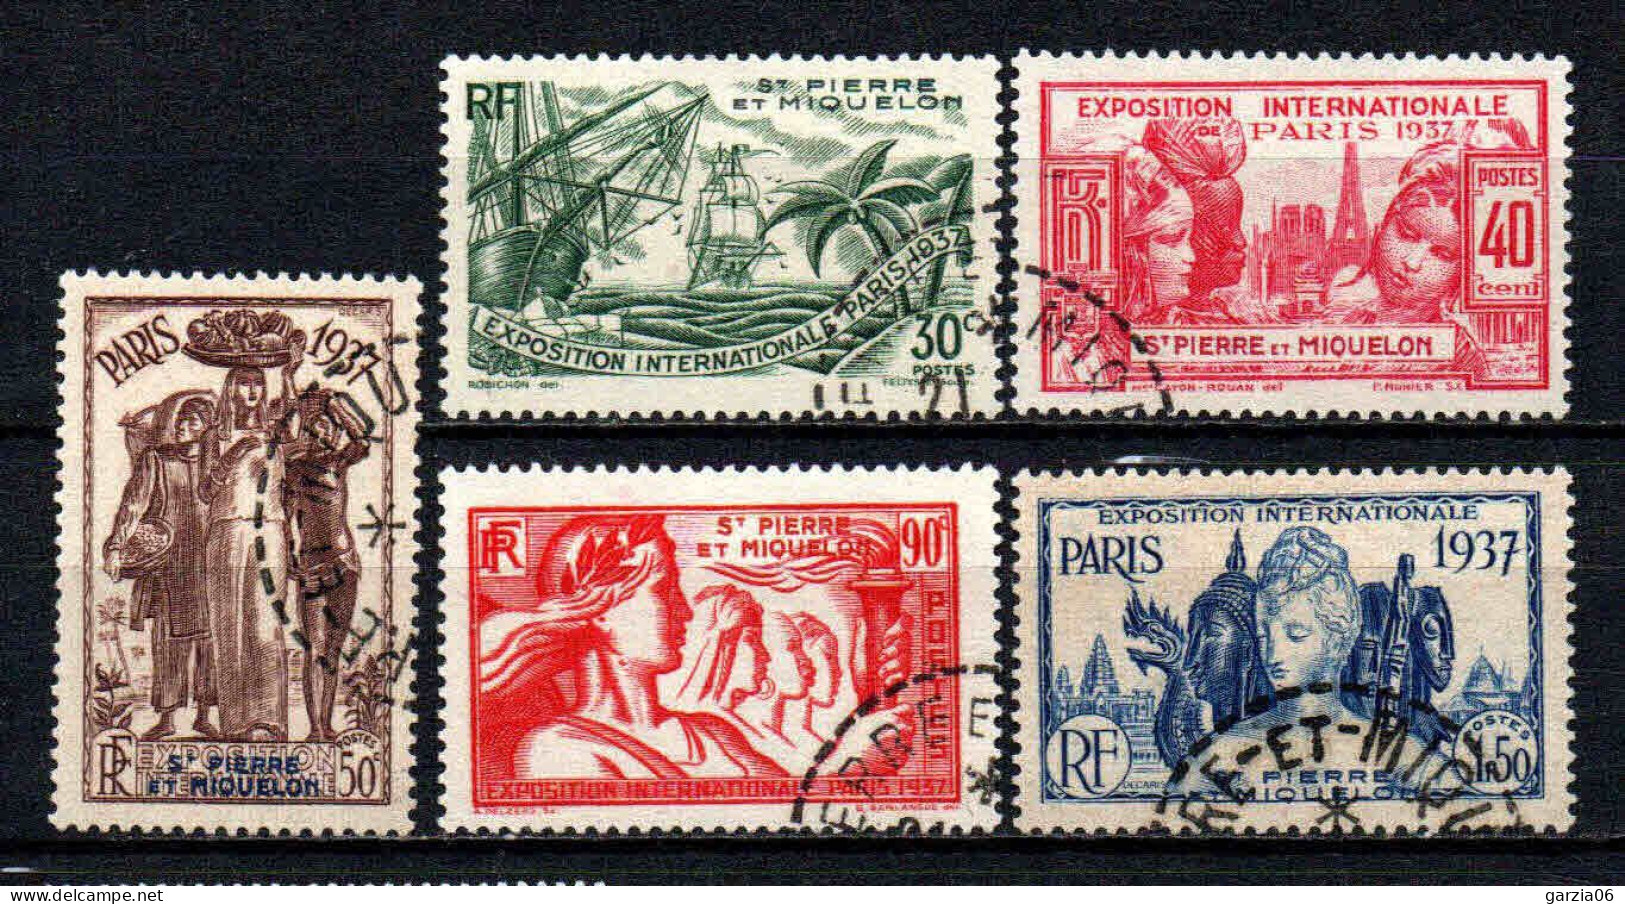 St Pierre Et Miquelon - 1937 - Exposition Internationale De Paris - N° 161 à 165 - Oblit - Used - Usados